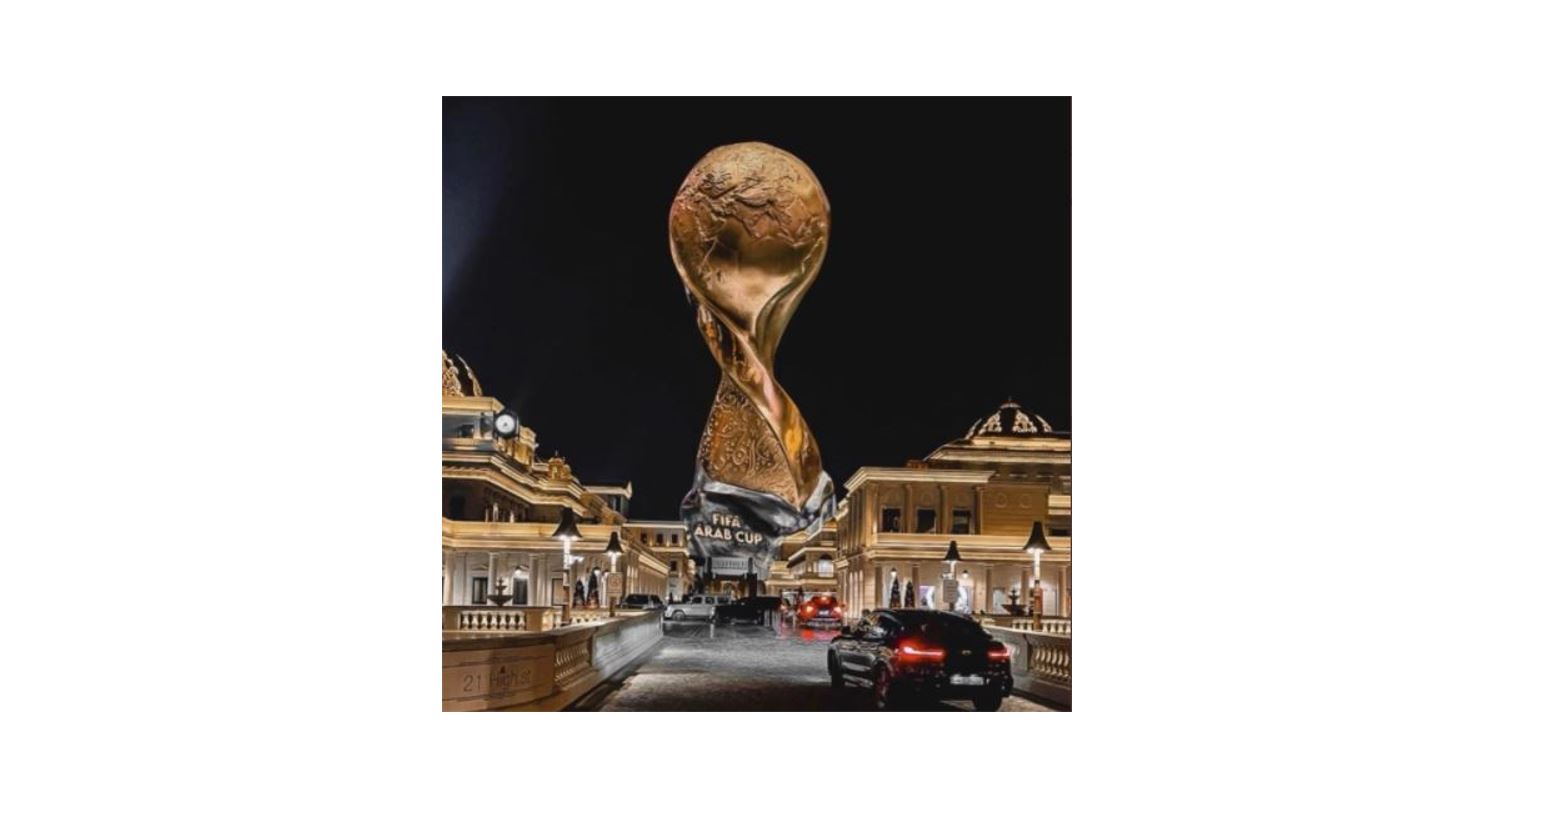 تردد القنوات المفتوحة الناقلة كأس العرب قطر 2021 بي إن سبورت و alkass